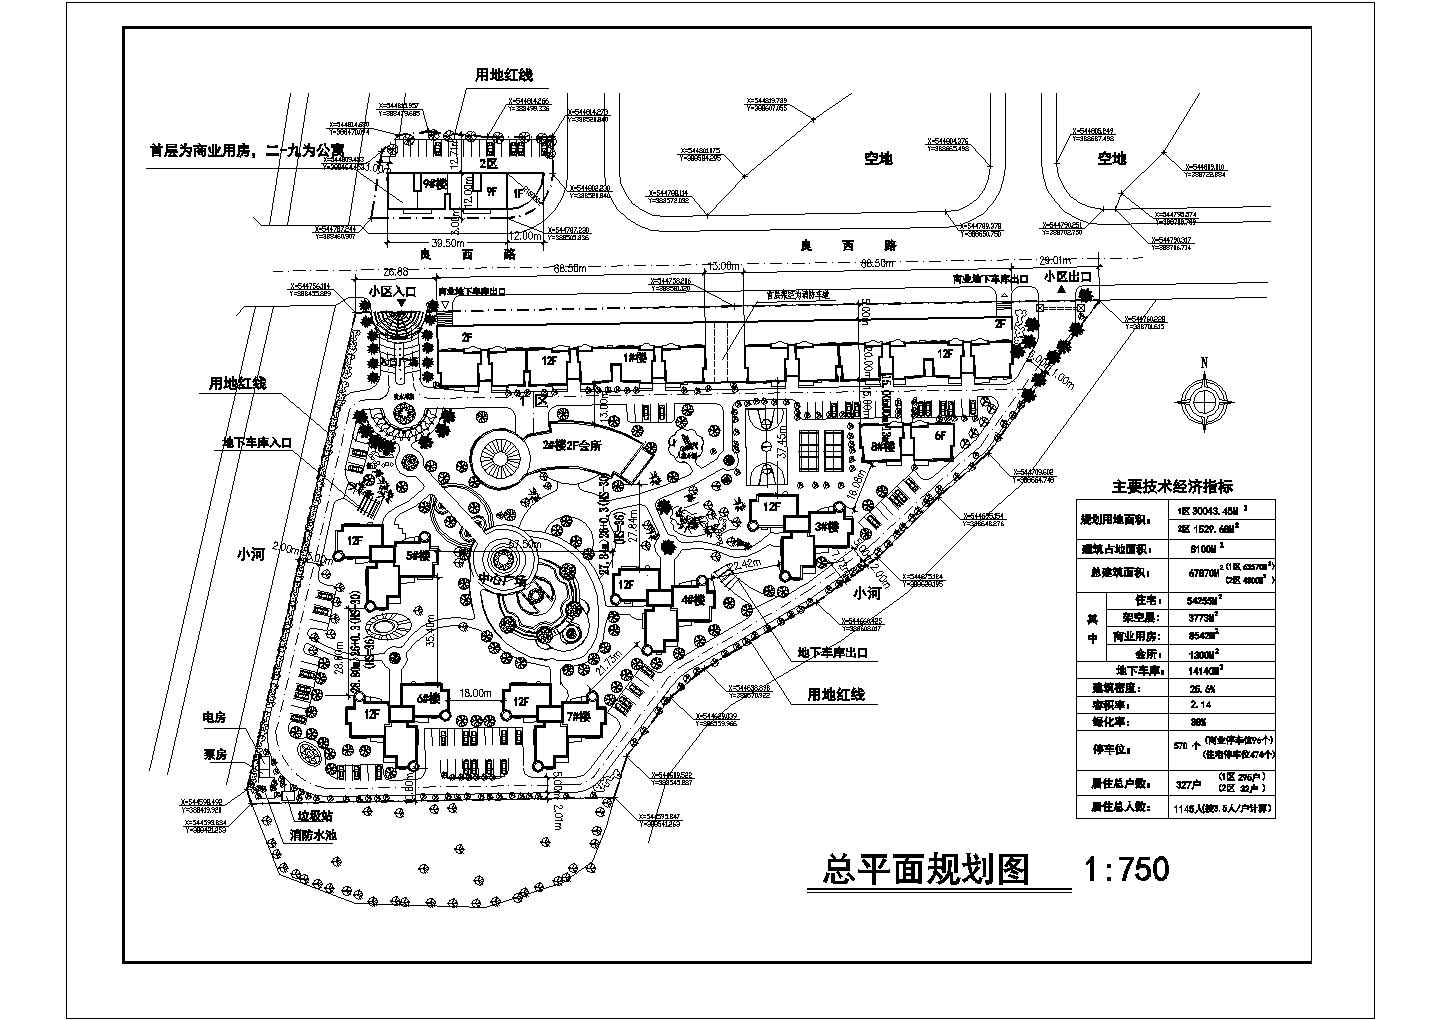 【安徽】某地农民公寓规划设计平面图